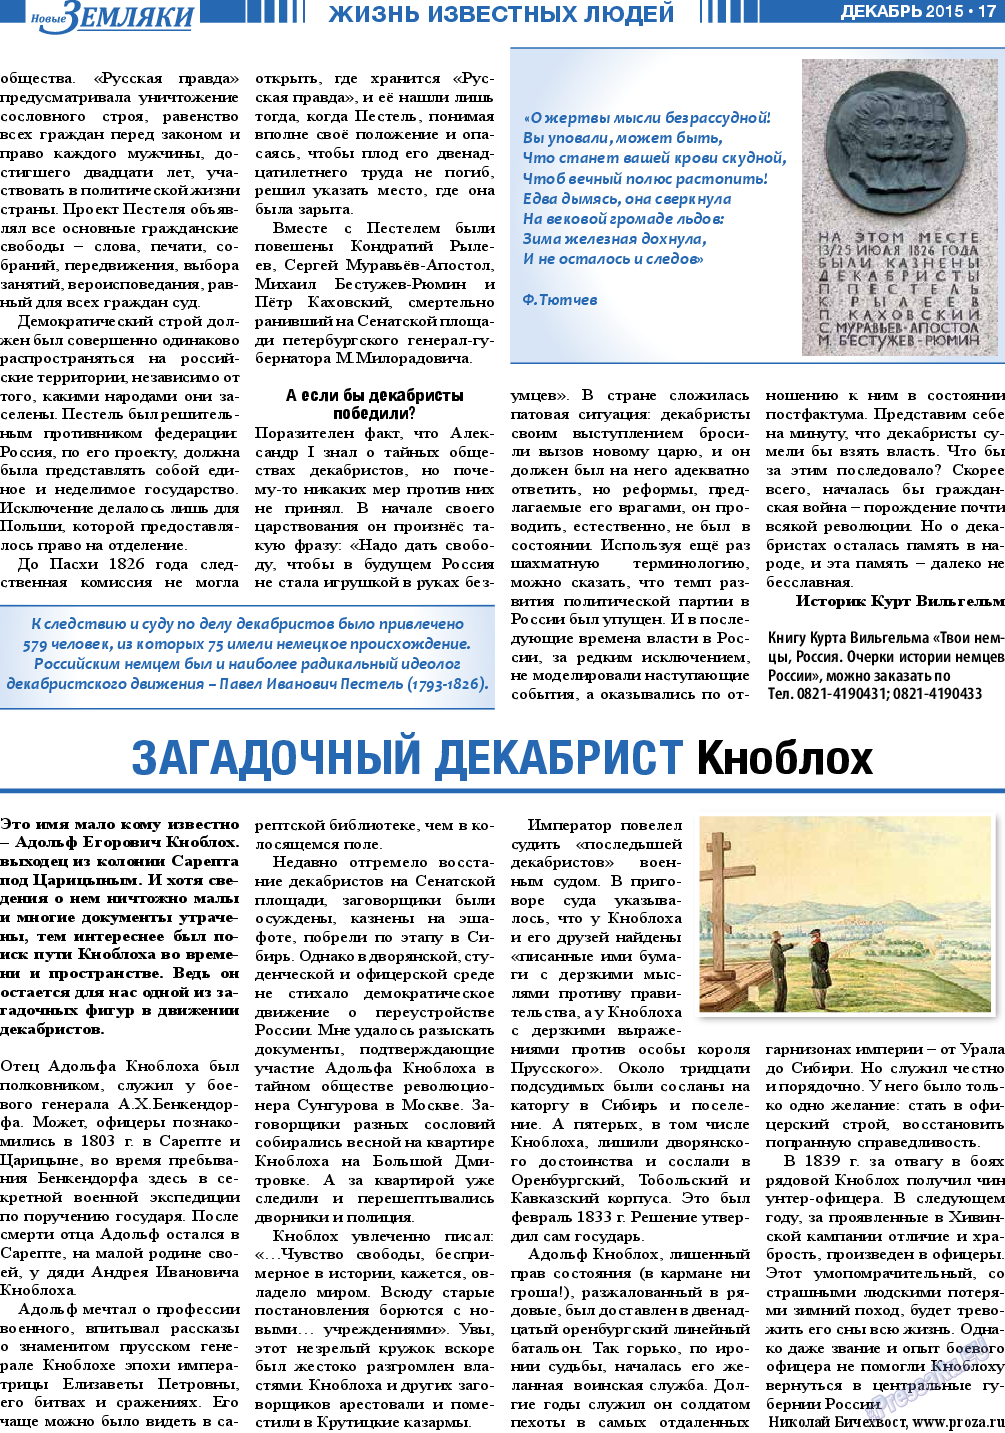 Новые Земляки, газета. 2015 №12 стр.17